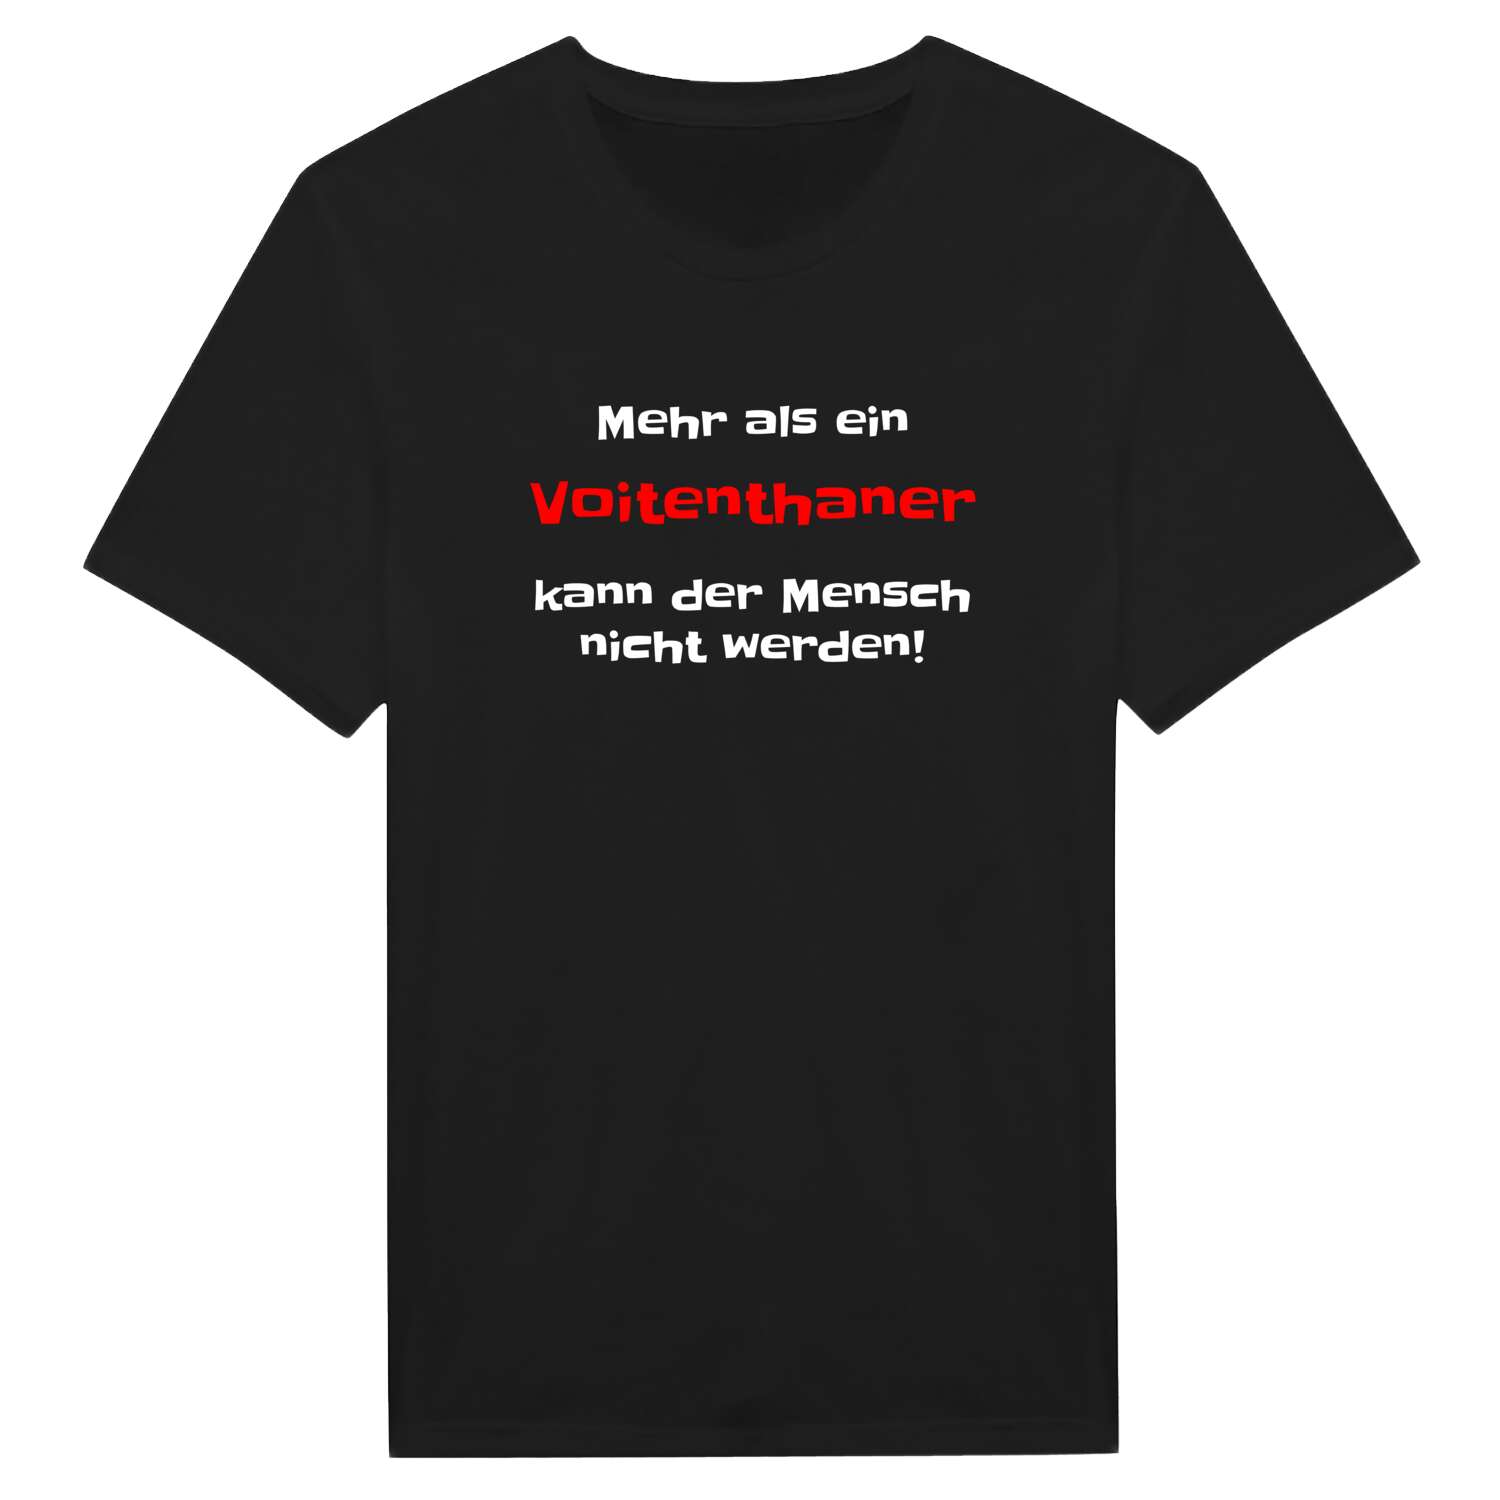 Voitenthan T-Shirt »Mehr als ein«